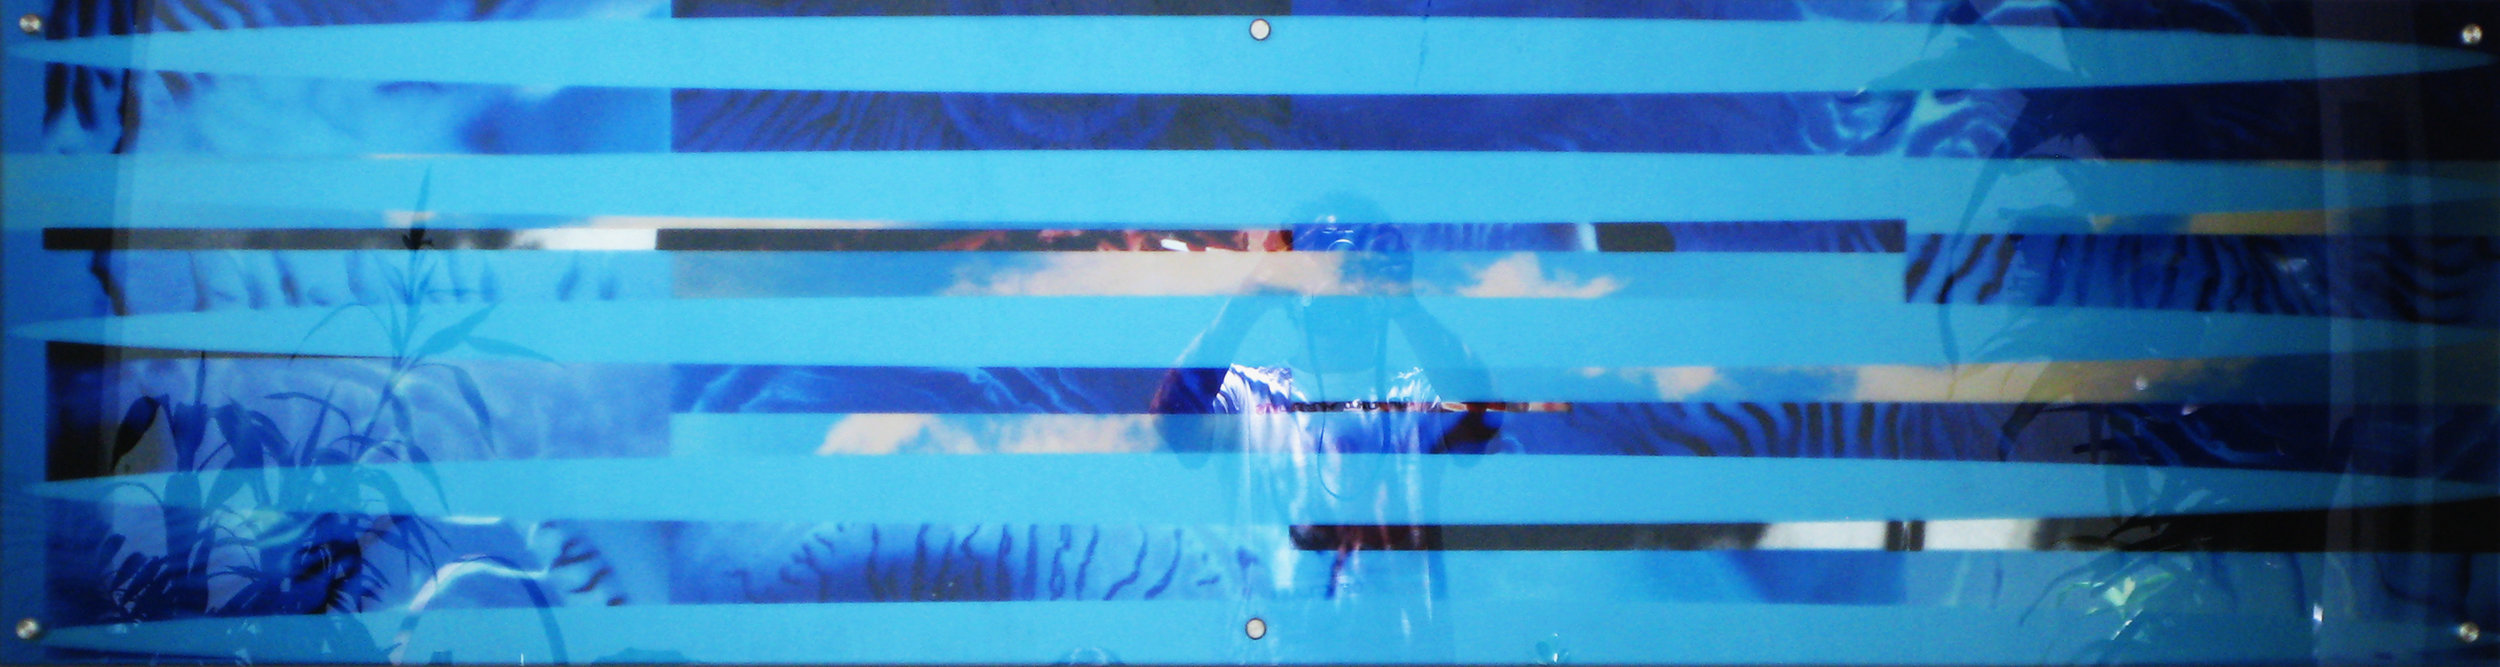 Blue window. 2010